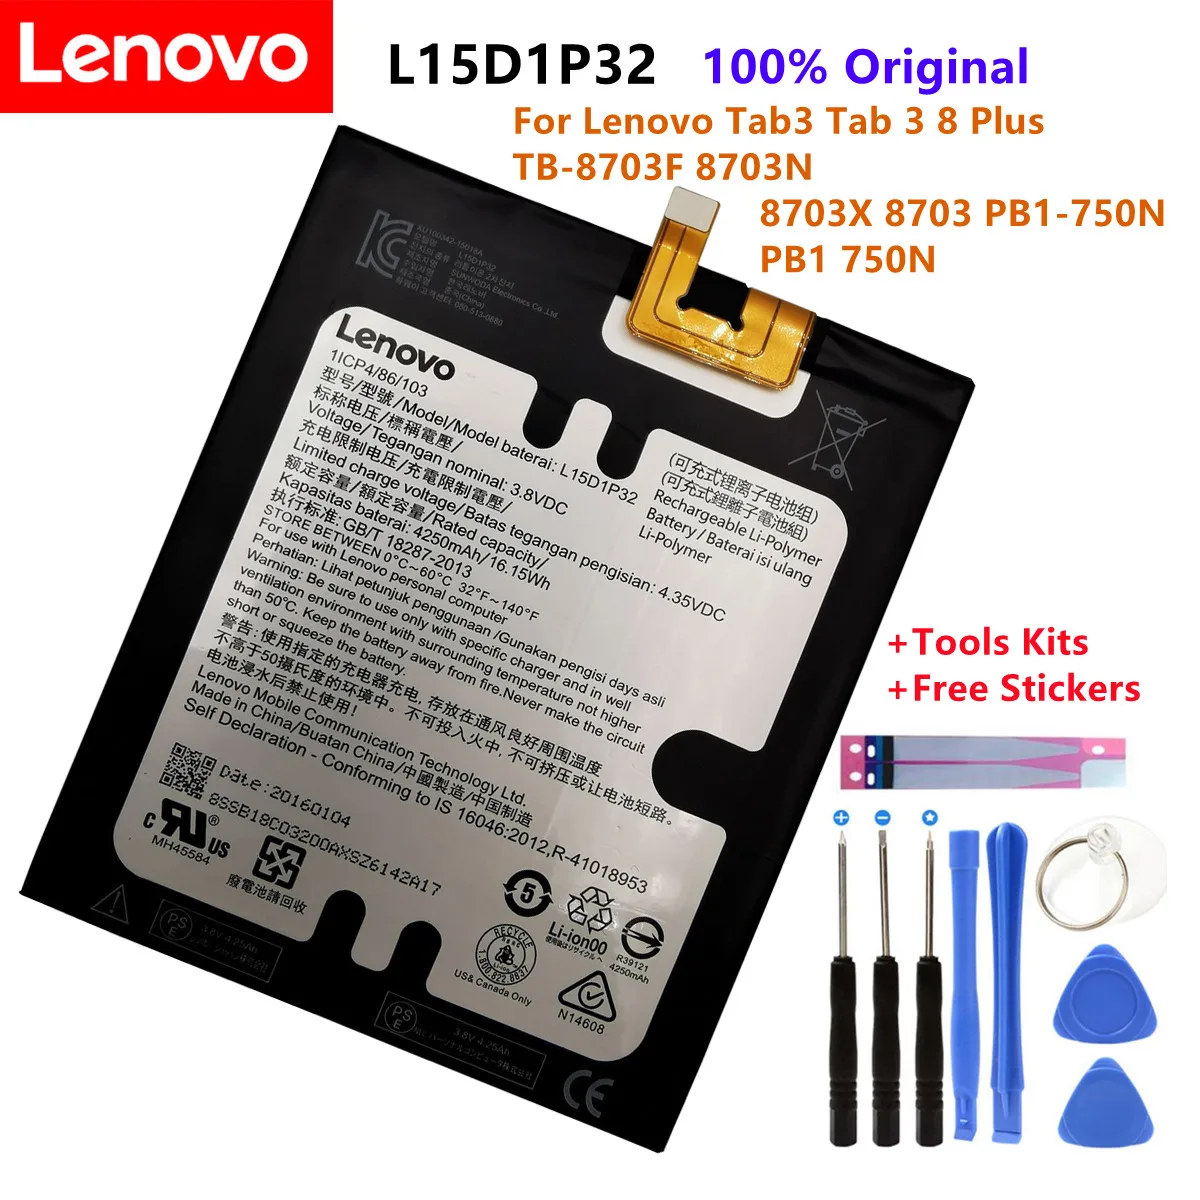 

100% Original L15D1P32 4250mAh Battery For Lenovo Tab3 Tab 3 8 Plus TB-8703F 8703N 8703X 8703 PB1-750N PB1-750+ Tools